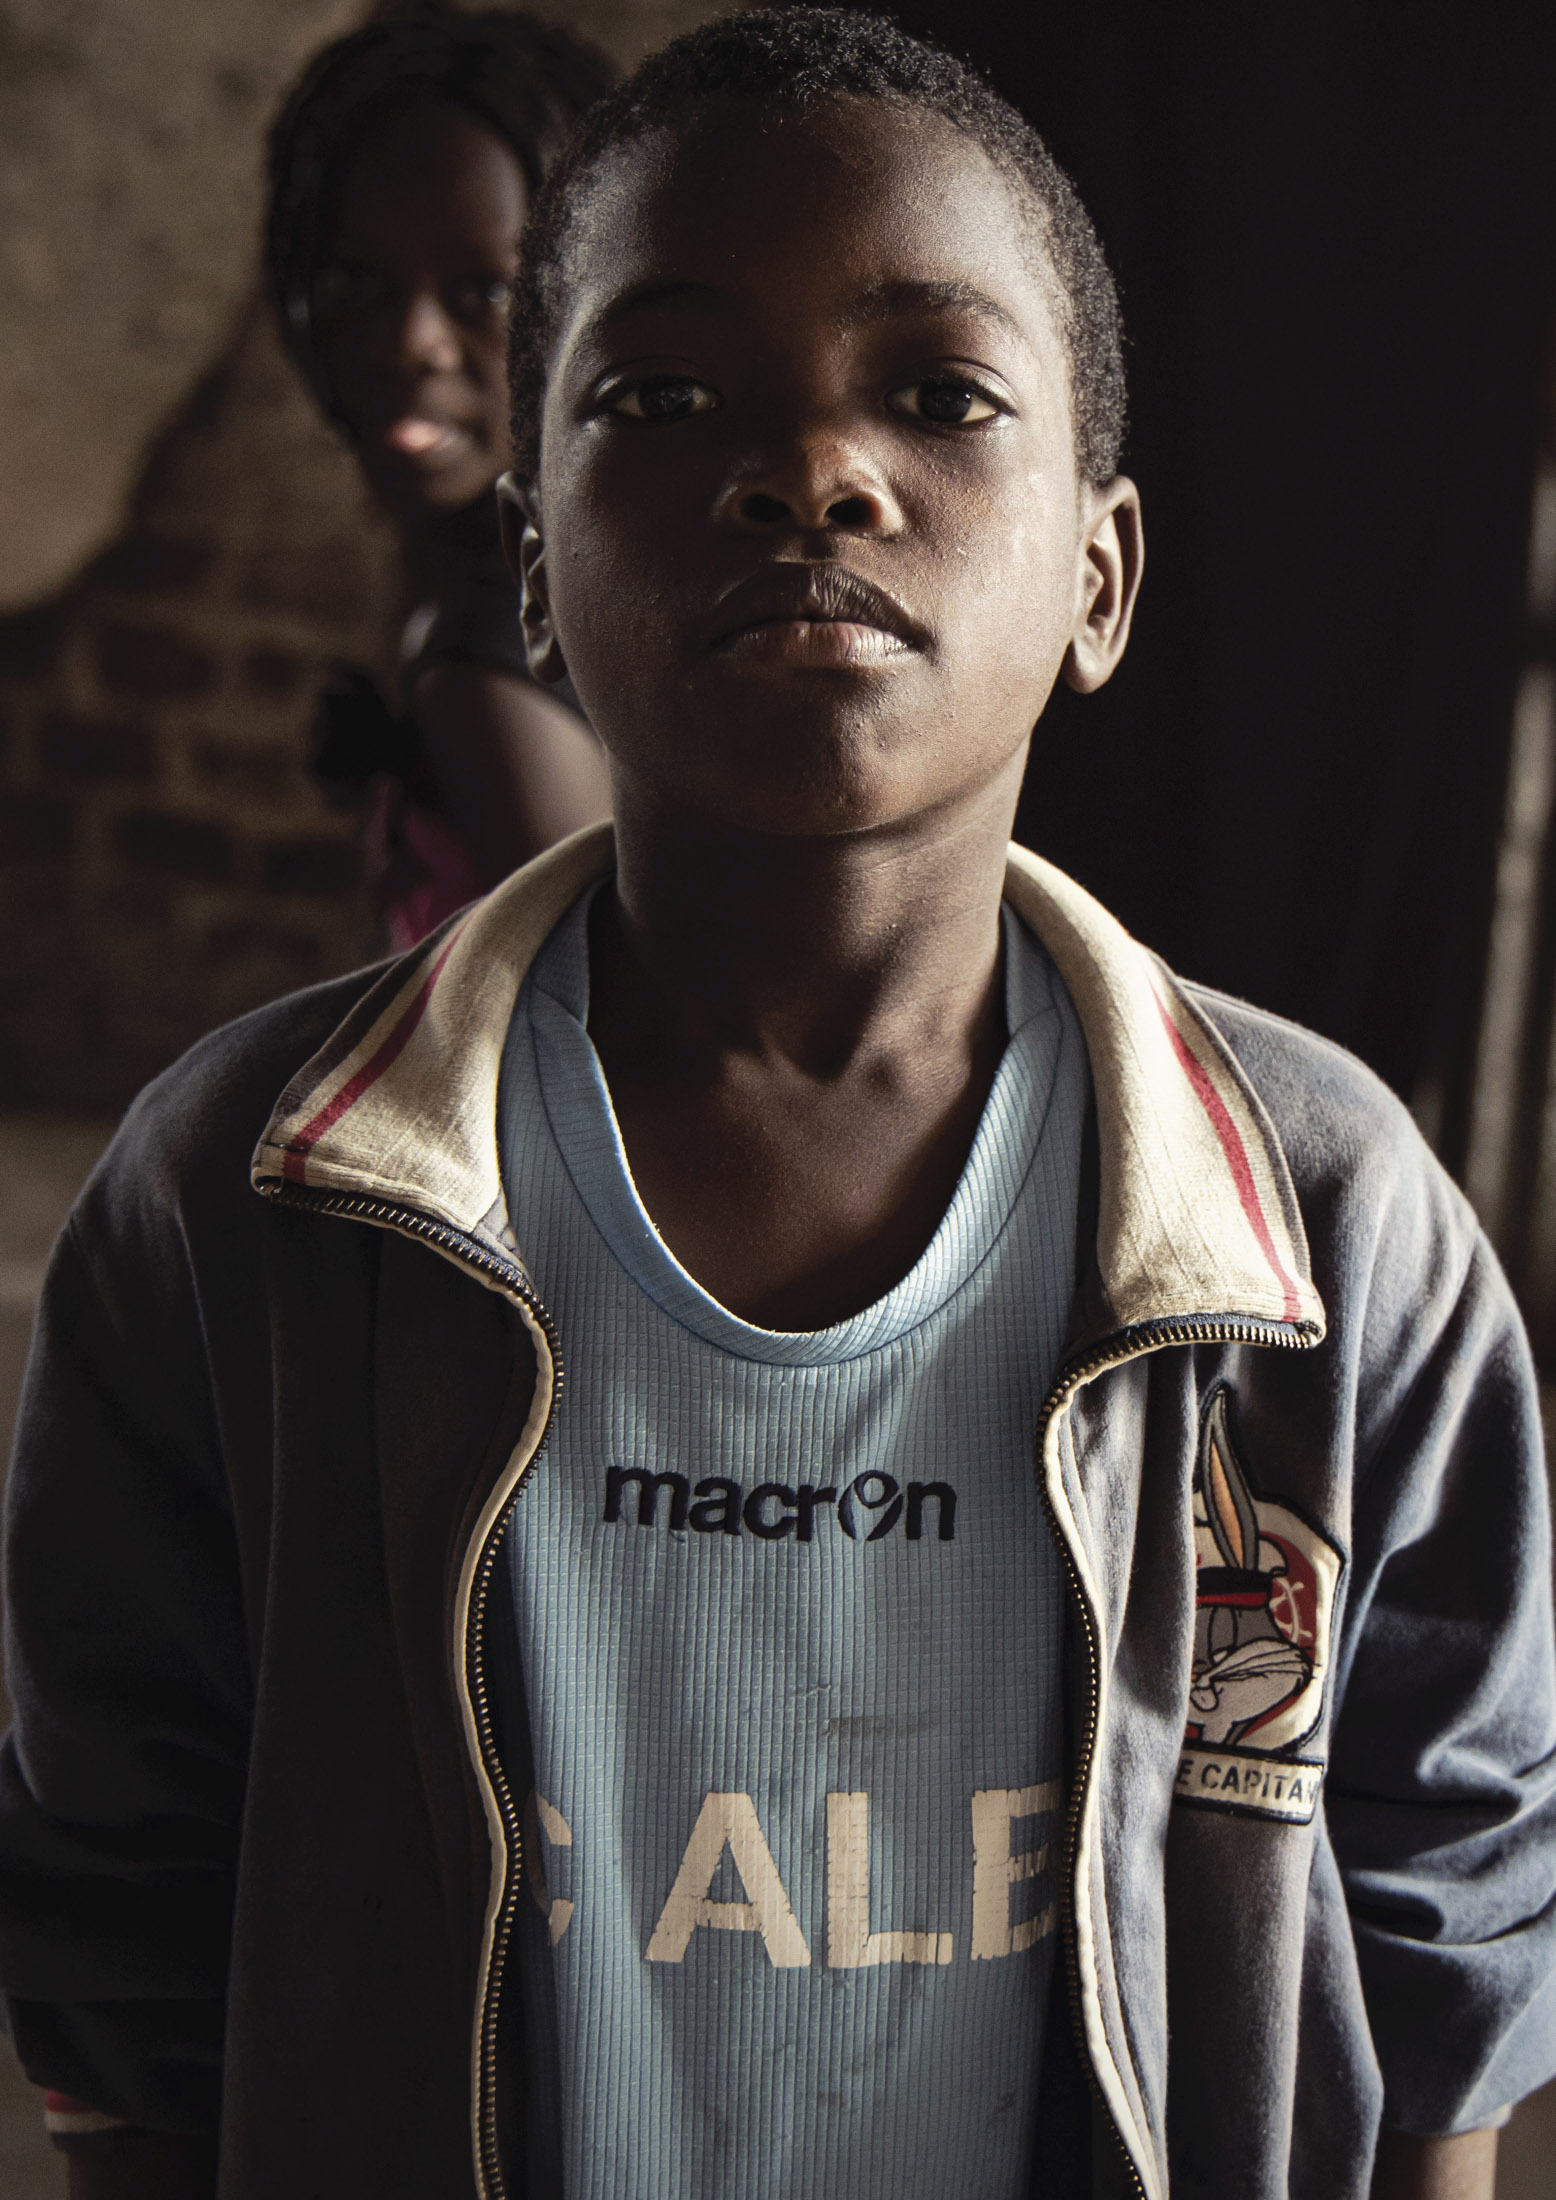 Ein Porträt eines kleinen Jungen mit ernstem Gesichtsausdruck, der ein Sporttrikot und eine Jacke trägt. Er steht in einem Innenbereich mit sanfter Beleuchtung, im Hintergrund ist ein lächelndes Mädchen zu sehen. © Fotografie Tomas Rodriguez